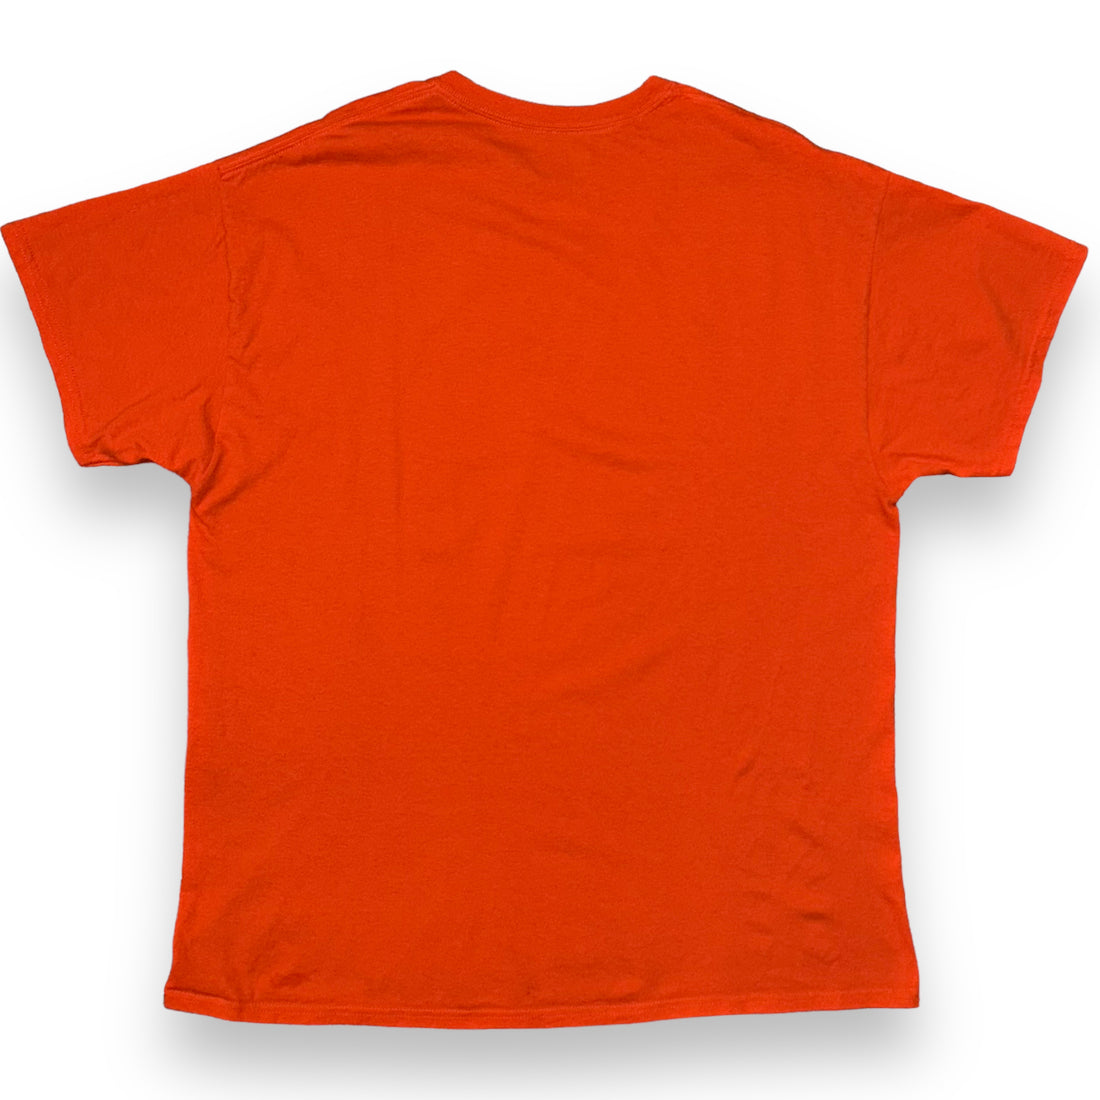 T-shirt Chicago Bears NFL  (XL)